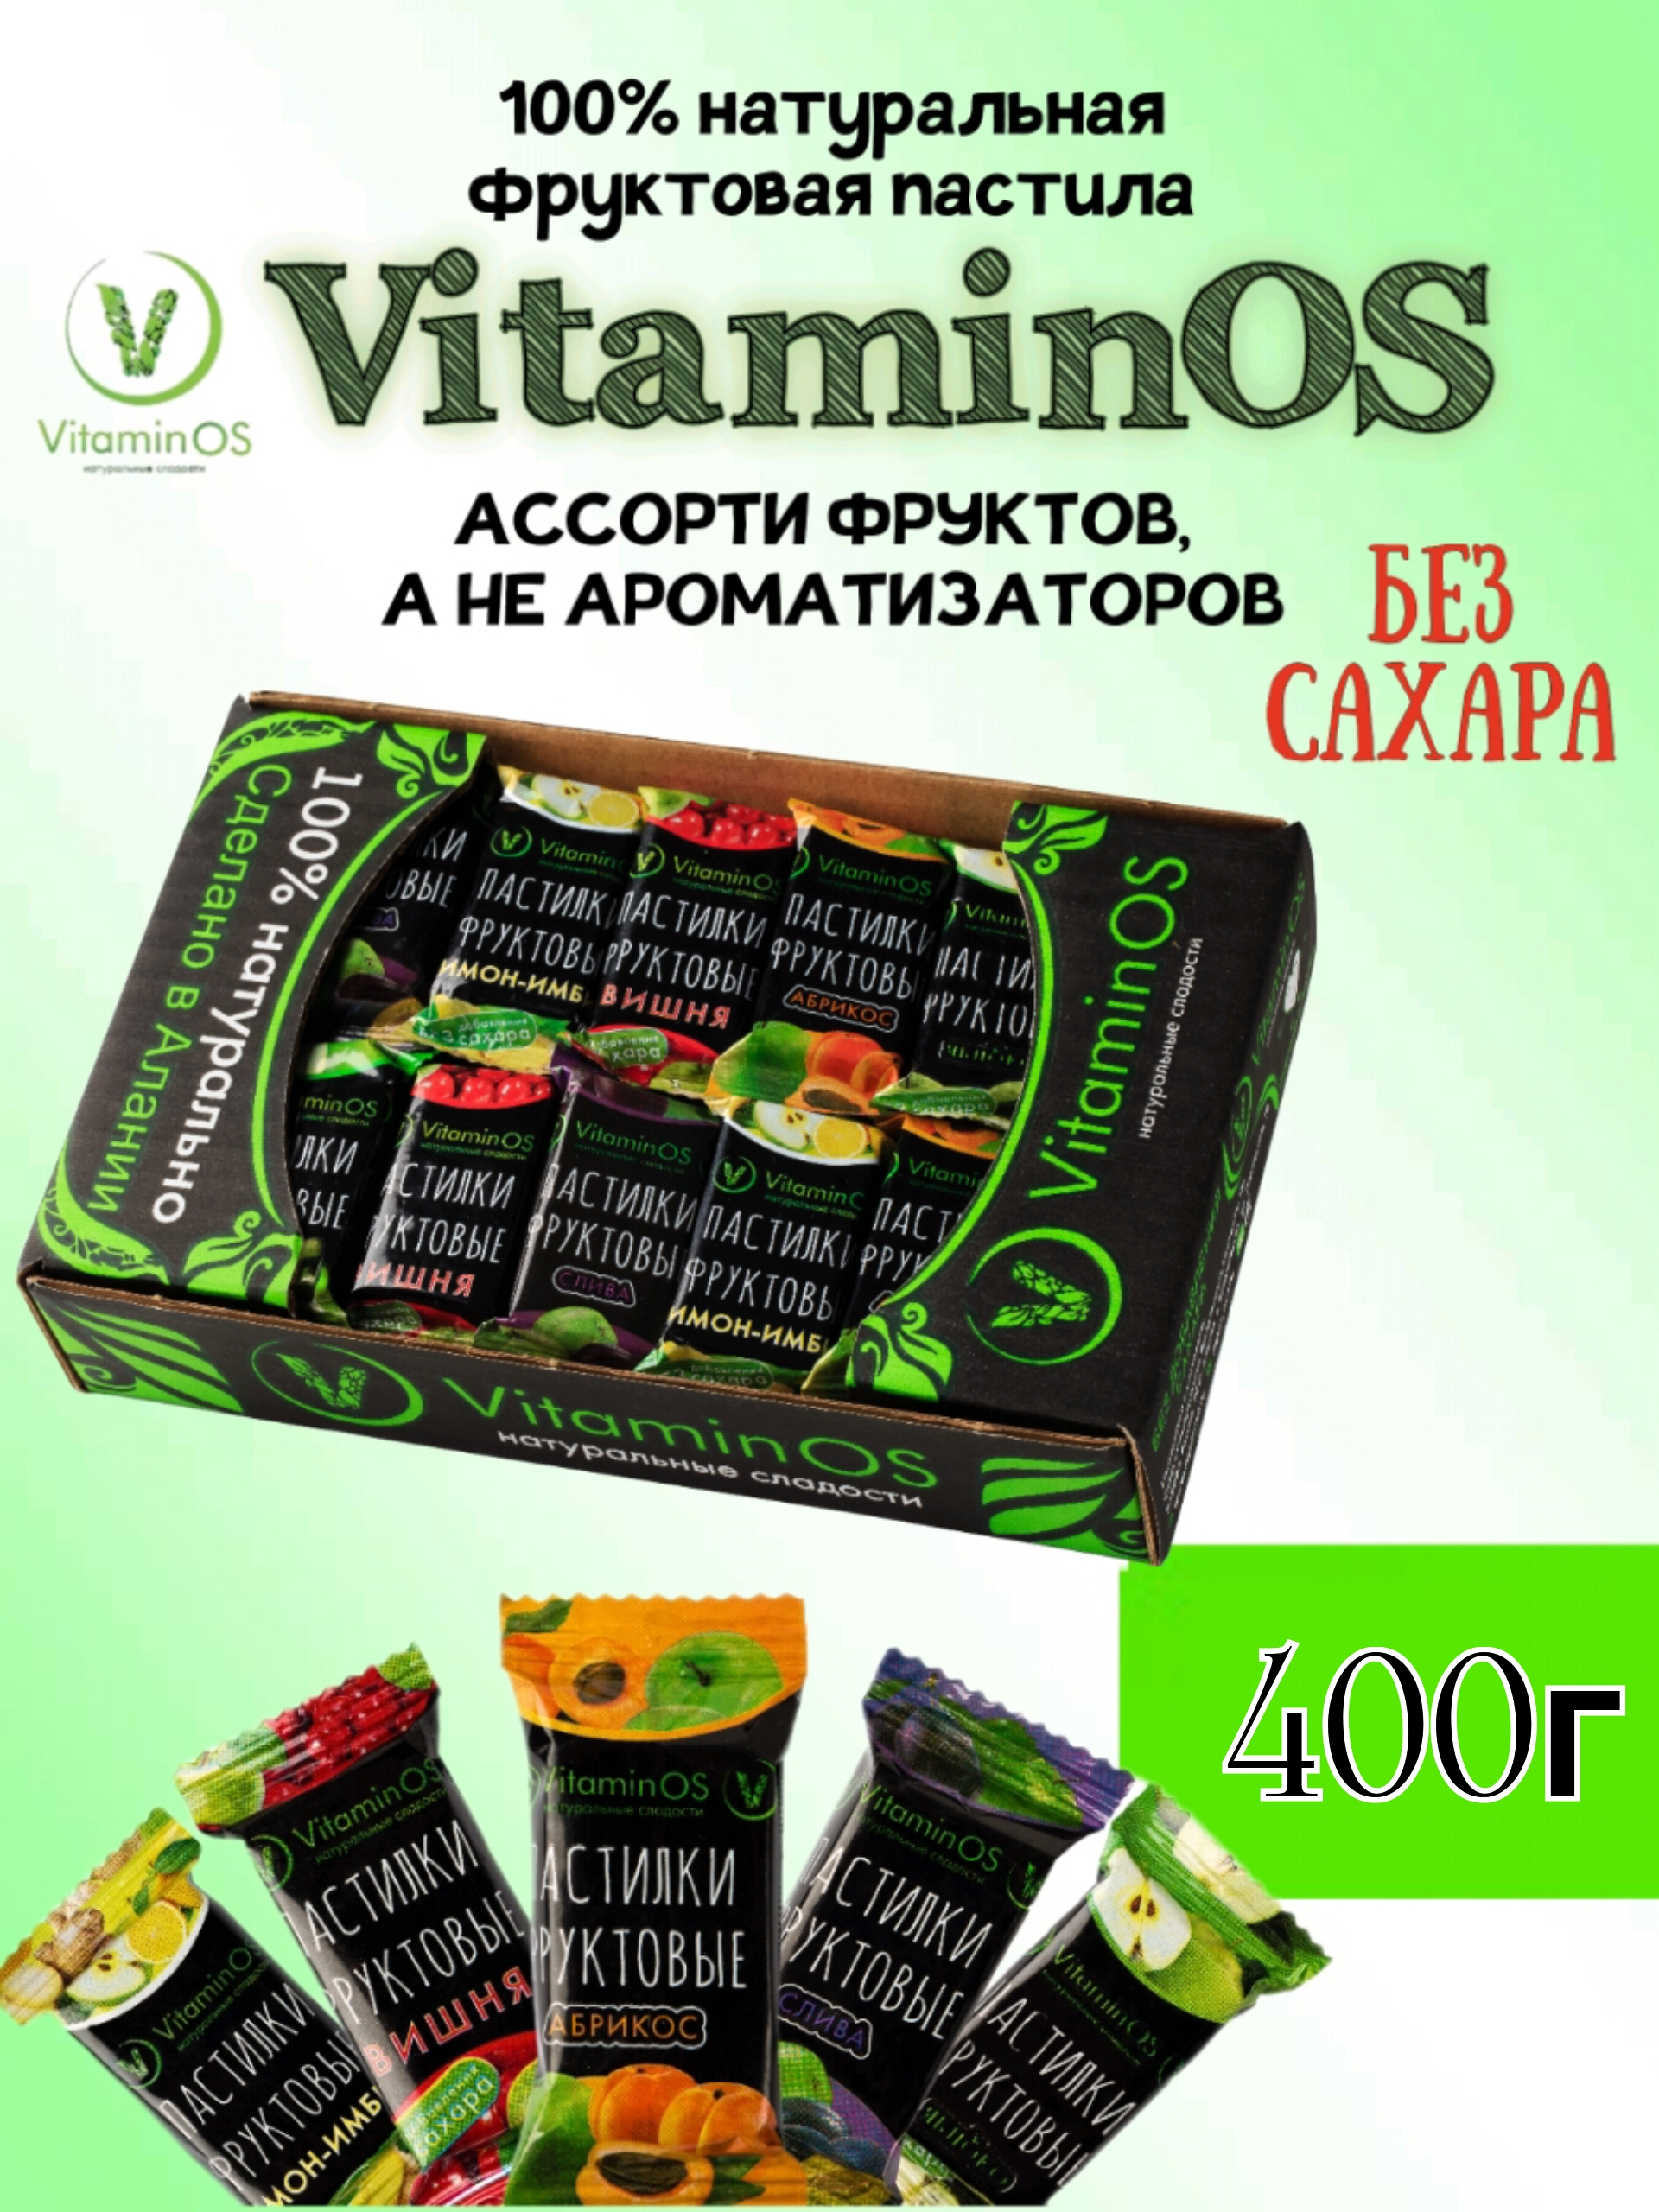 Пастила VitaminOS фруктовое ассорти 400г - фото 1